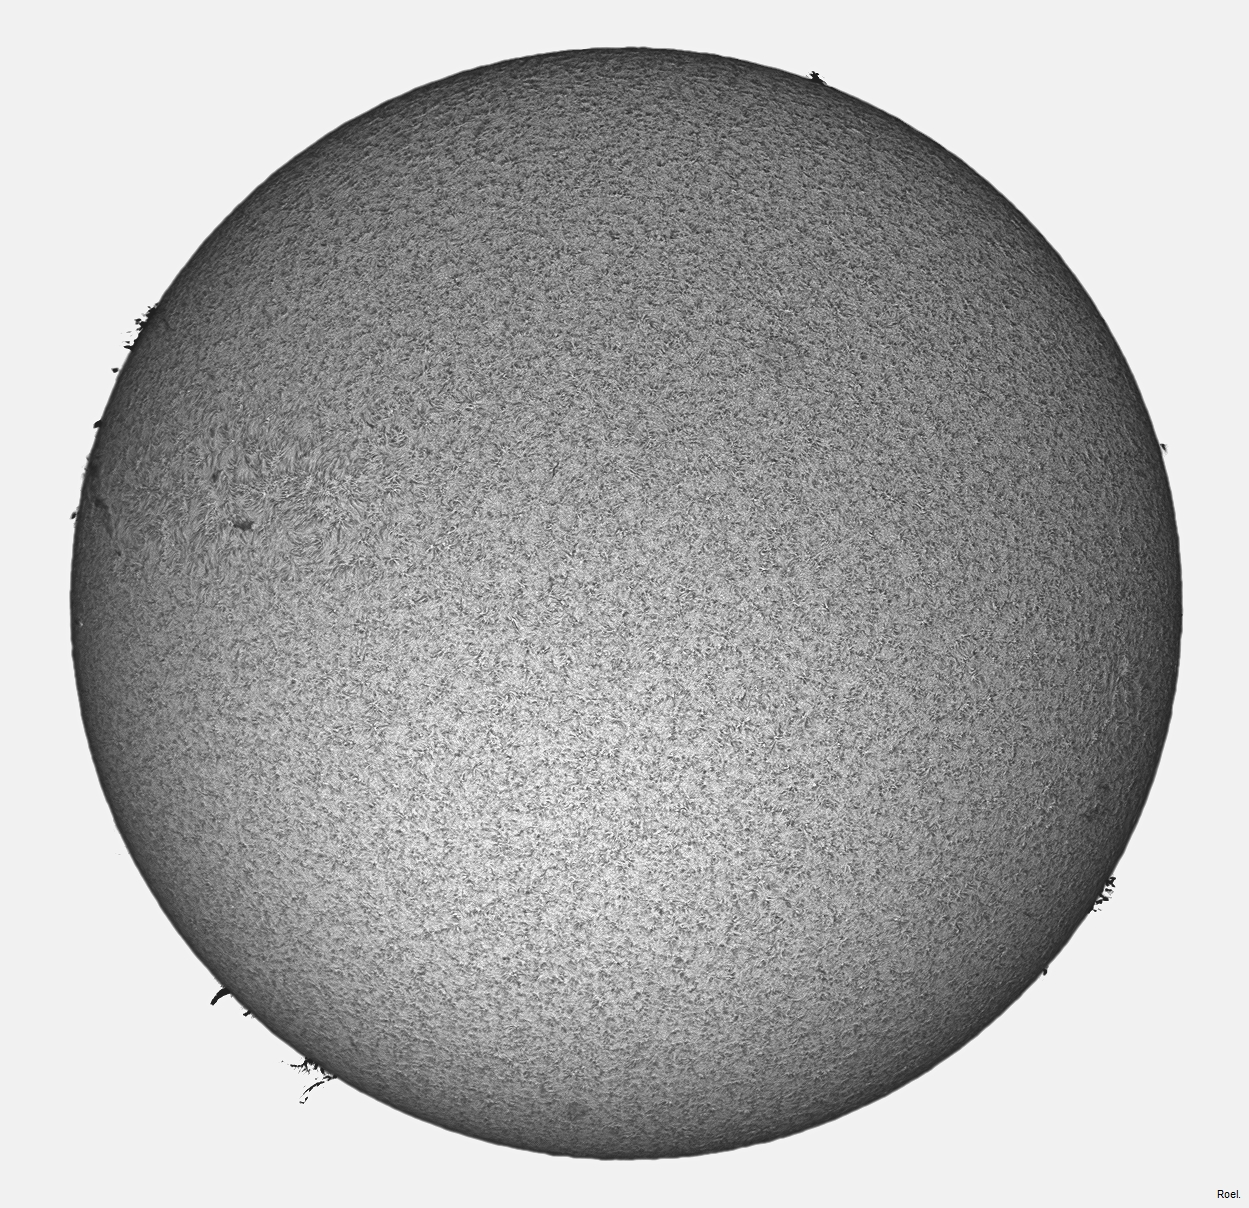 Sol del 28 de agosto del 2020-Solarmax 90-DS-BF30-1pos-neg.jpg